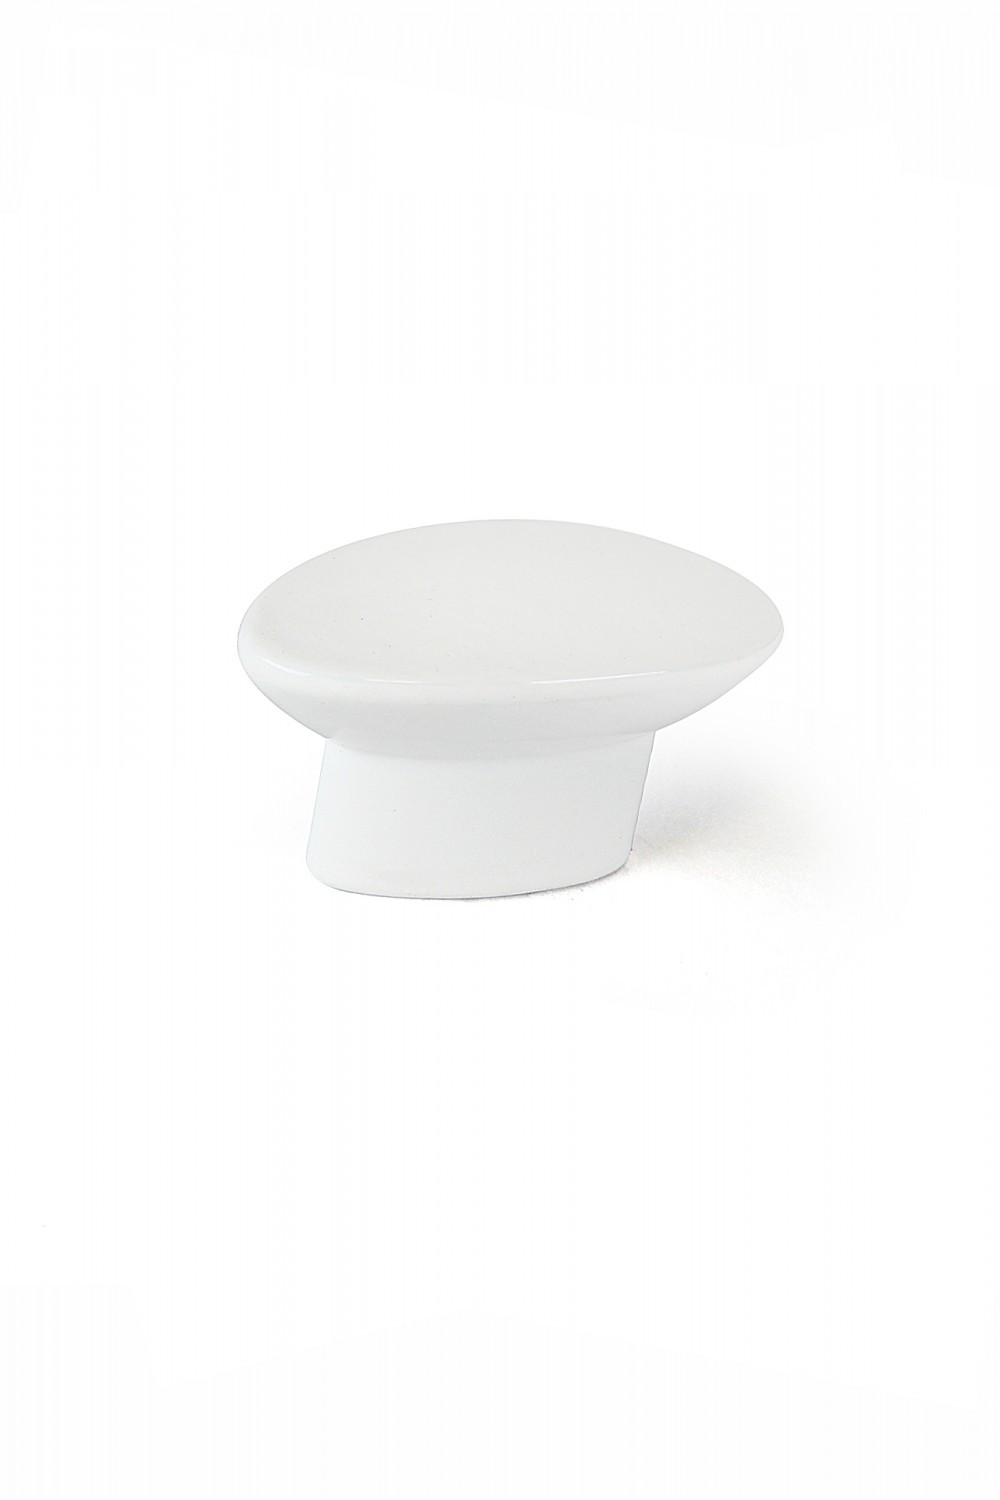 Bouton de meuble Ovale blanc zamak H.24 x l.41 x P.19 mm